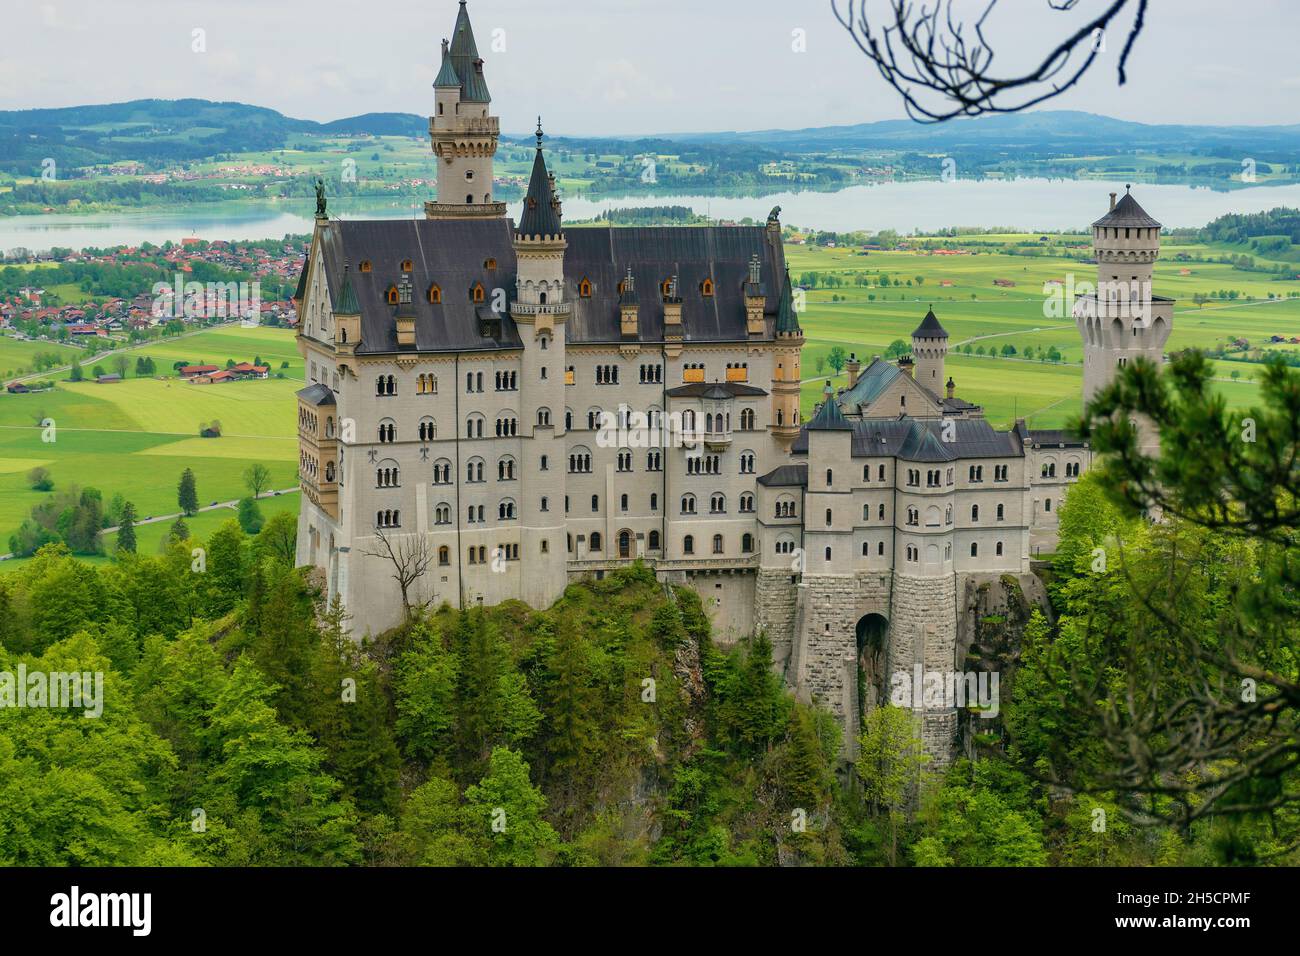 26 Mai 2019 Füssen, Deutschland - Details zur Architektur des Schlosses Neuschwanstein. Fassade und Türme mit weißem Stein bedeckt Stockfoto